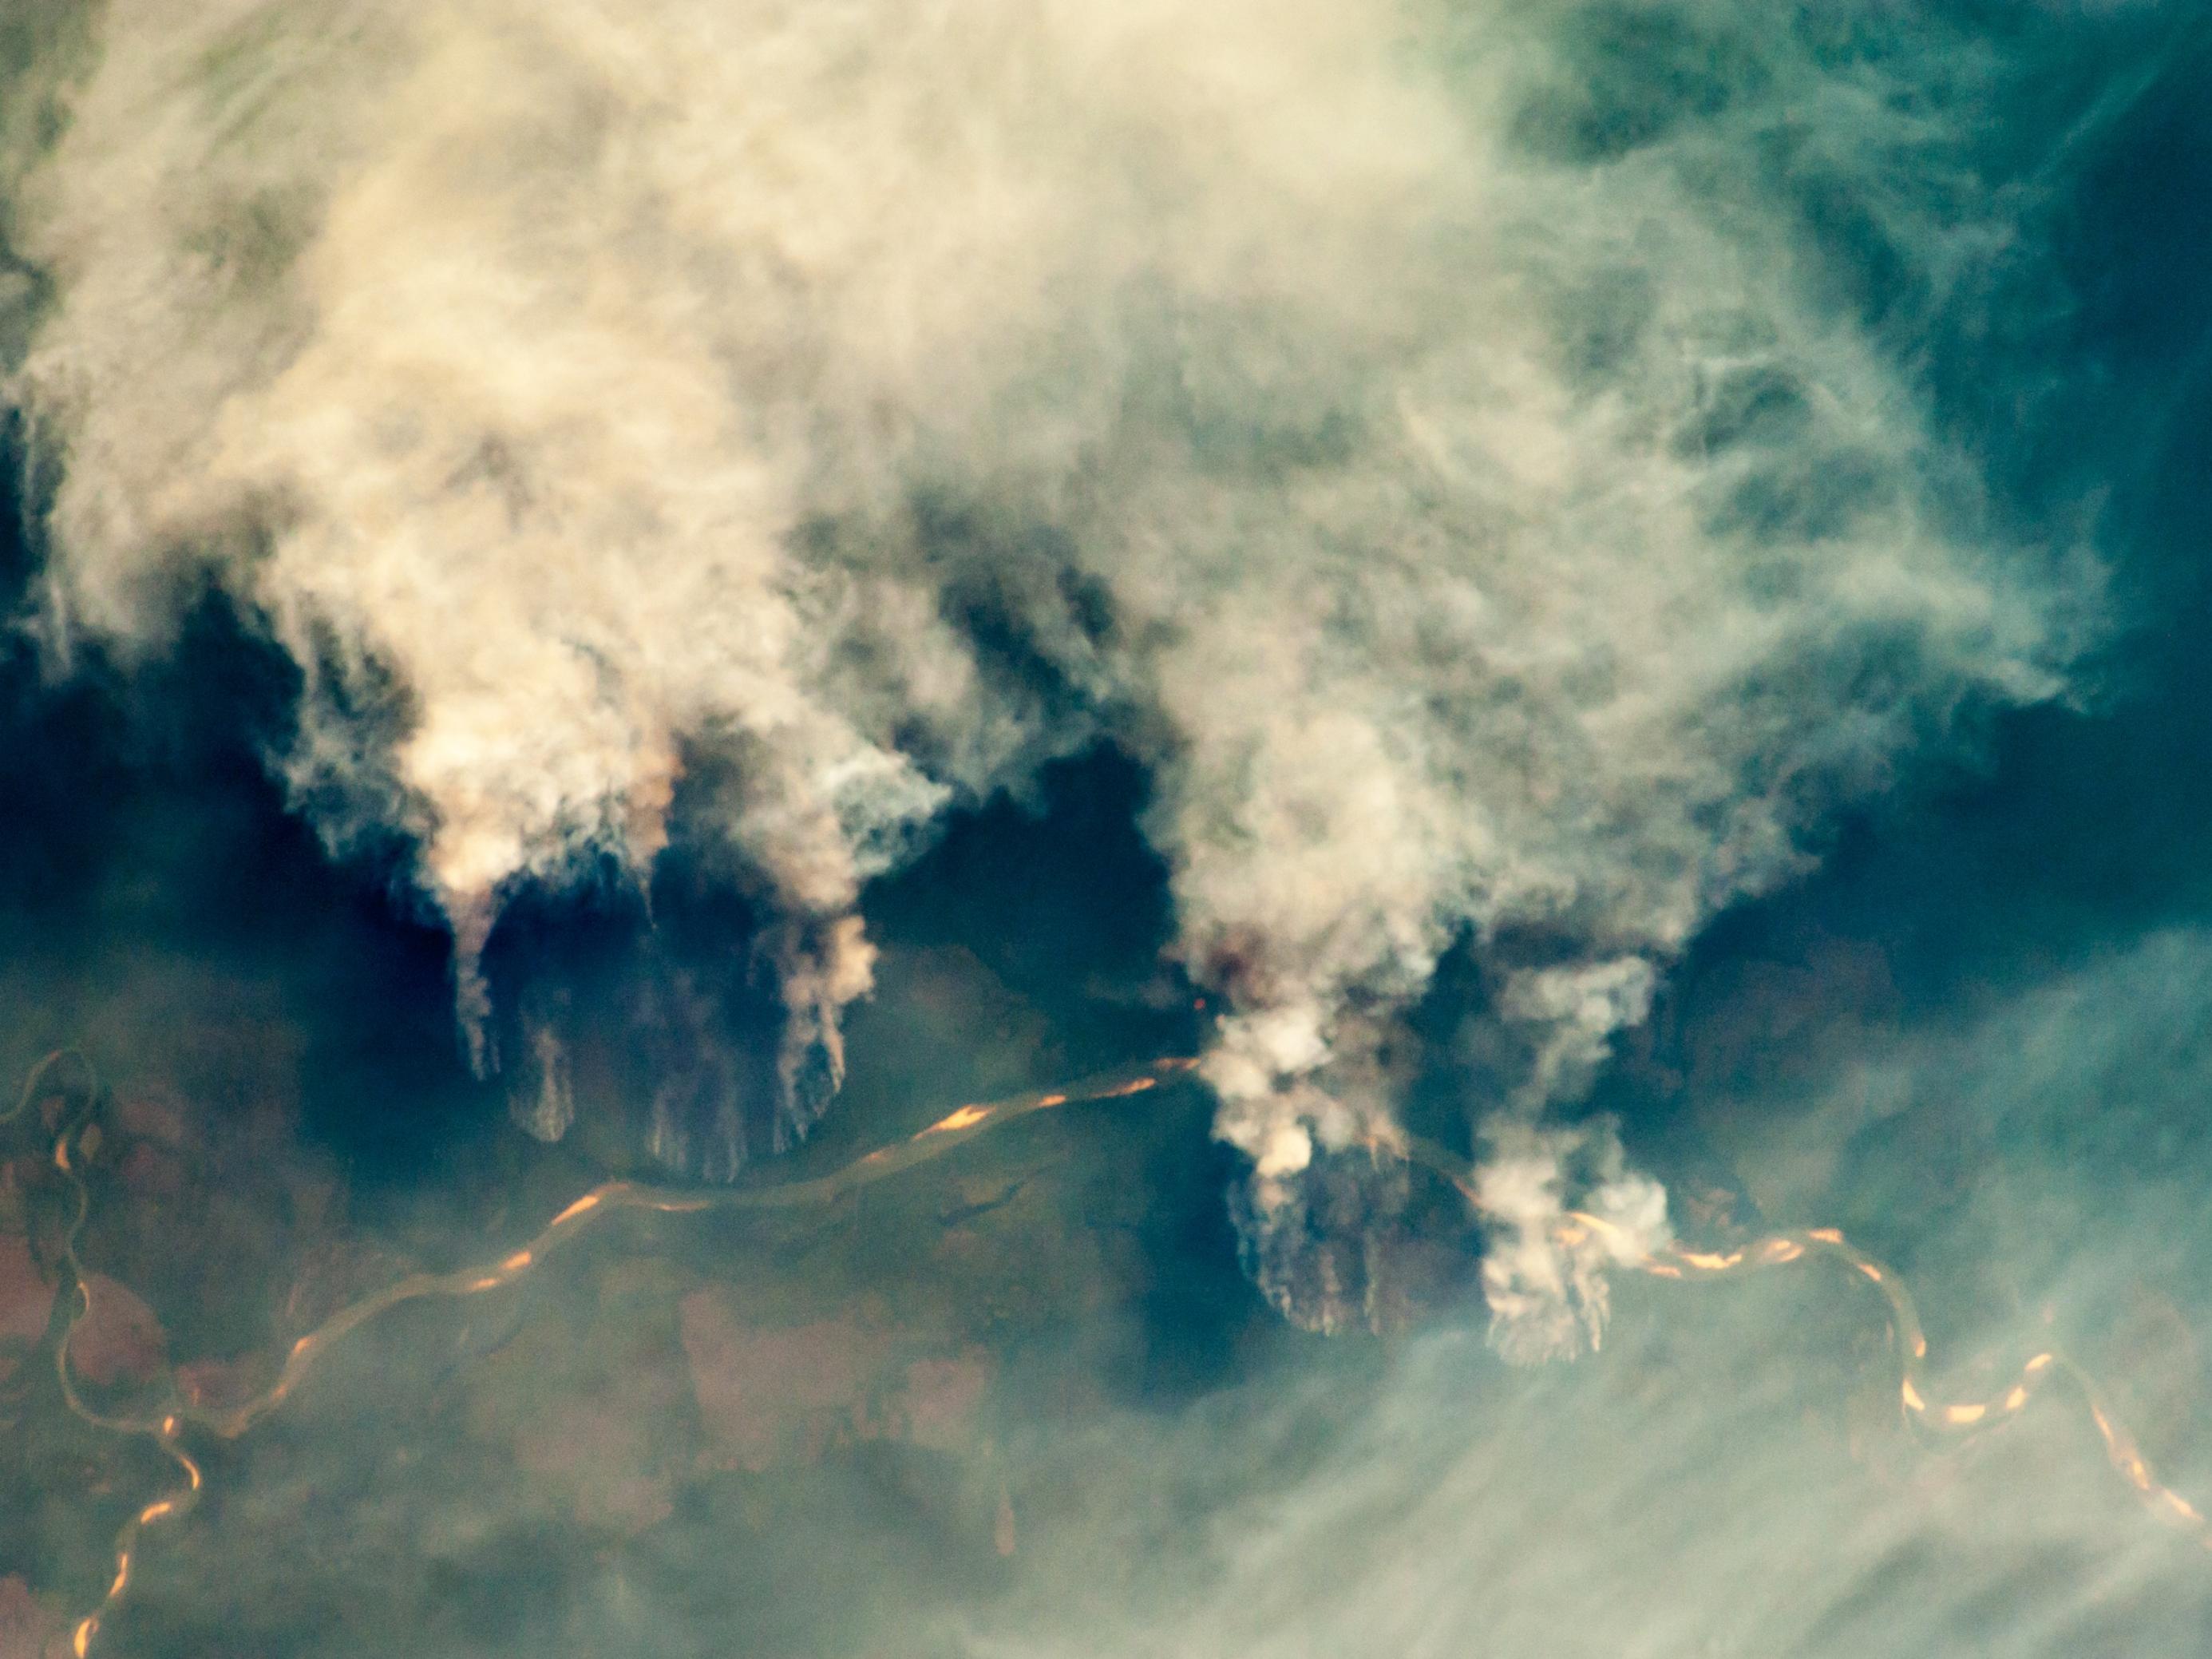 Luftaufnahme des brennenden Amazonas. Man sieht die enorme Rauchentwicklung.